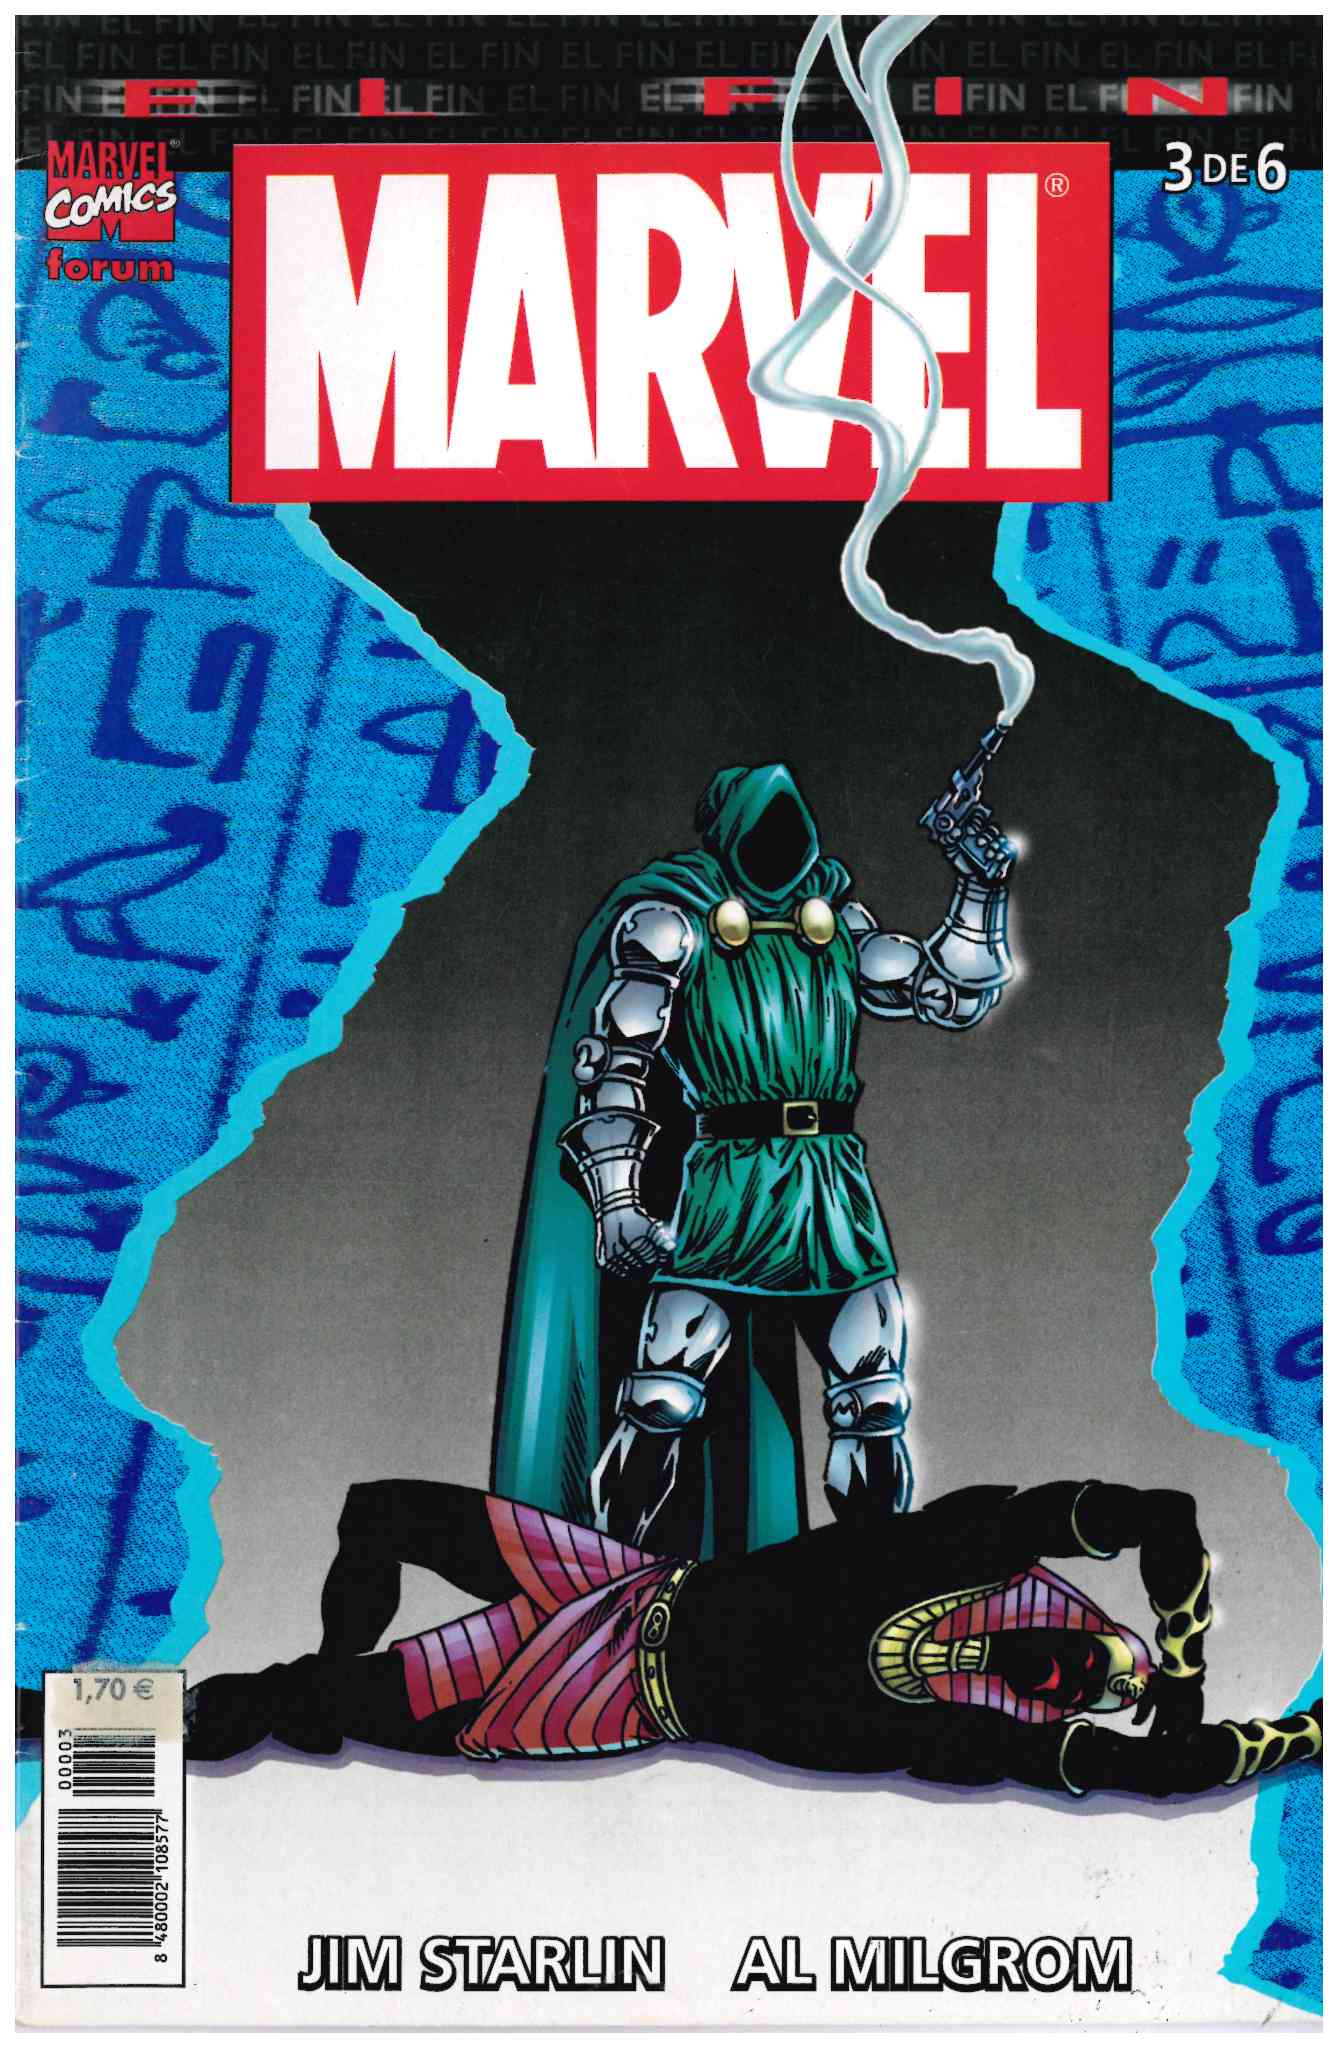 Universo Marvel: El Fin. Forum 2004. Nº 3